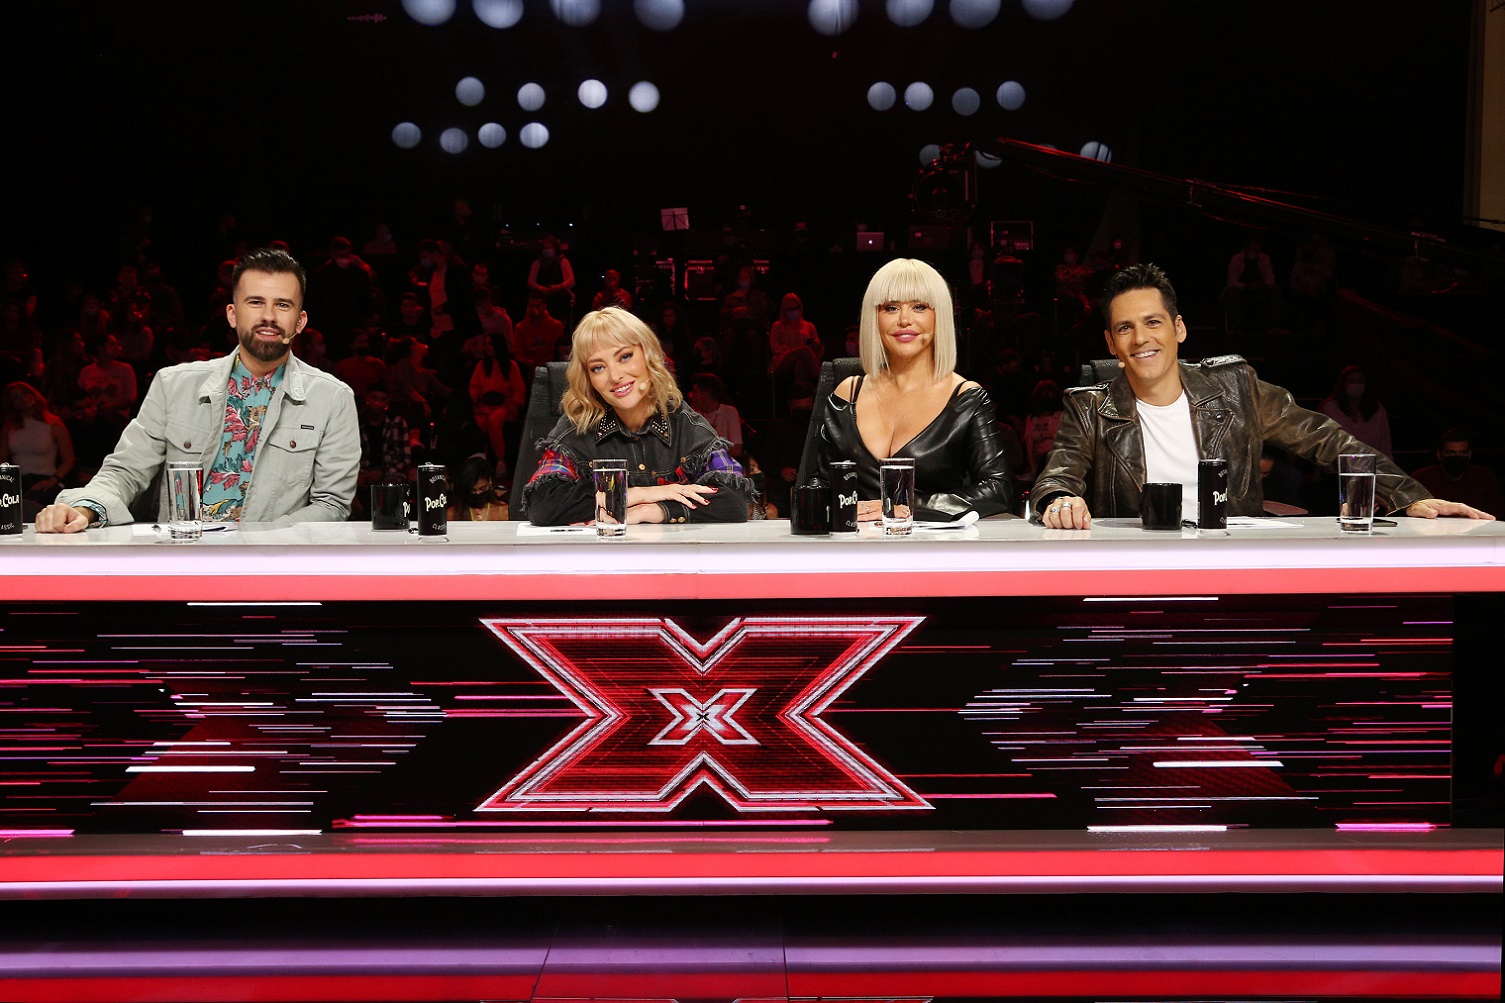 Ieri seară, la X Factor, Un concurent din echipa Loredanei şi-a cunoscut familia pe scena X Factor ”Suntem mândri cu toții că fratele nostru a ajuns unde a ajuns”